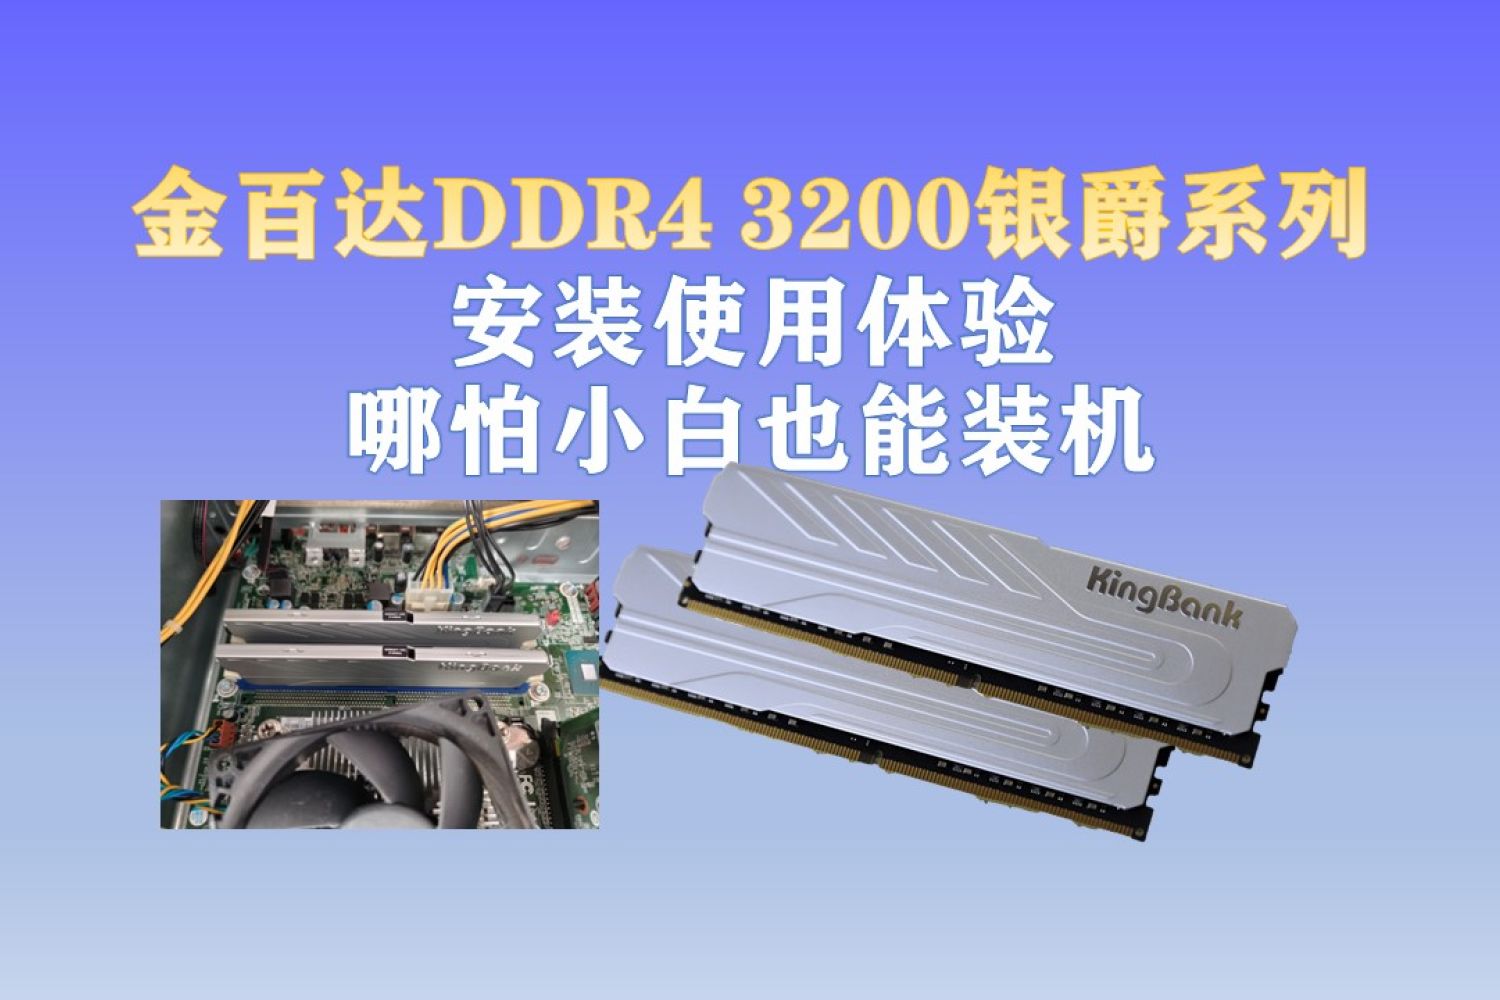 金百达DDR4 3200银爵内存条体验:小白也能装机